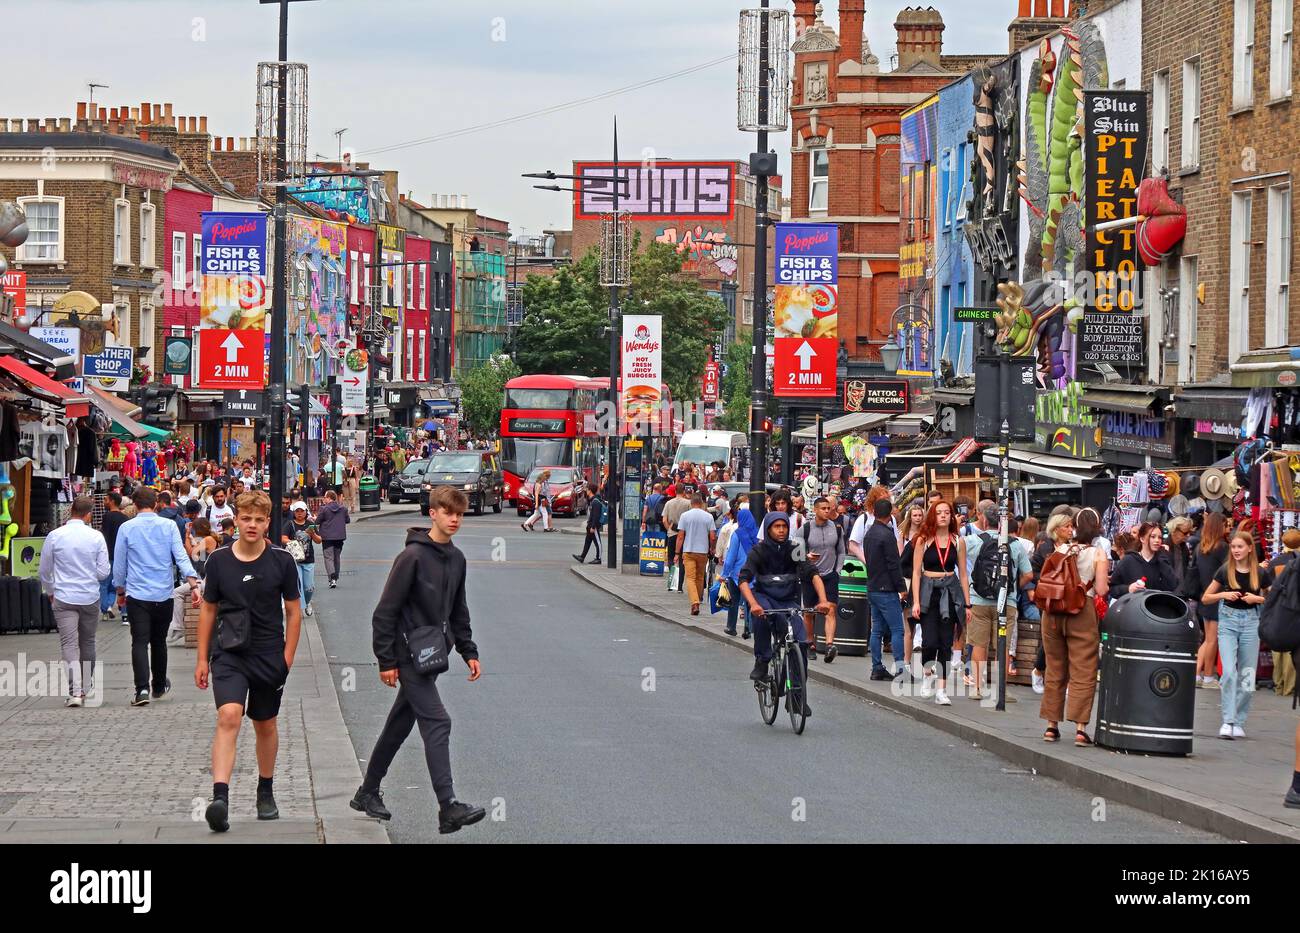 Magasins avec touristes et acheteurs, à Camden High Street, Camden Town, Londres, Angleterre, Royaume-Uni, NW1 8QR Banque D'Images